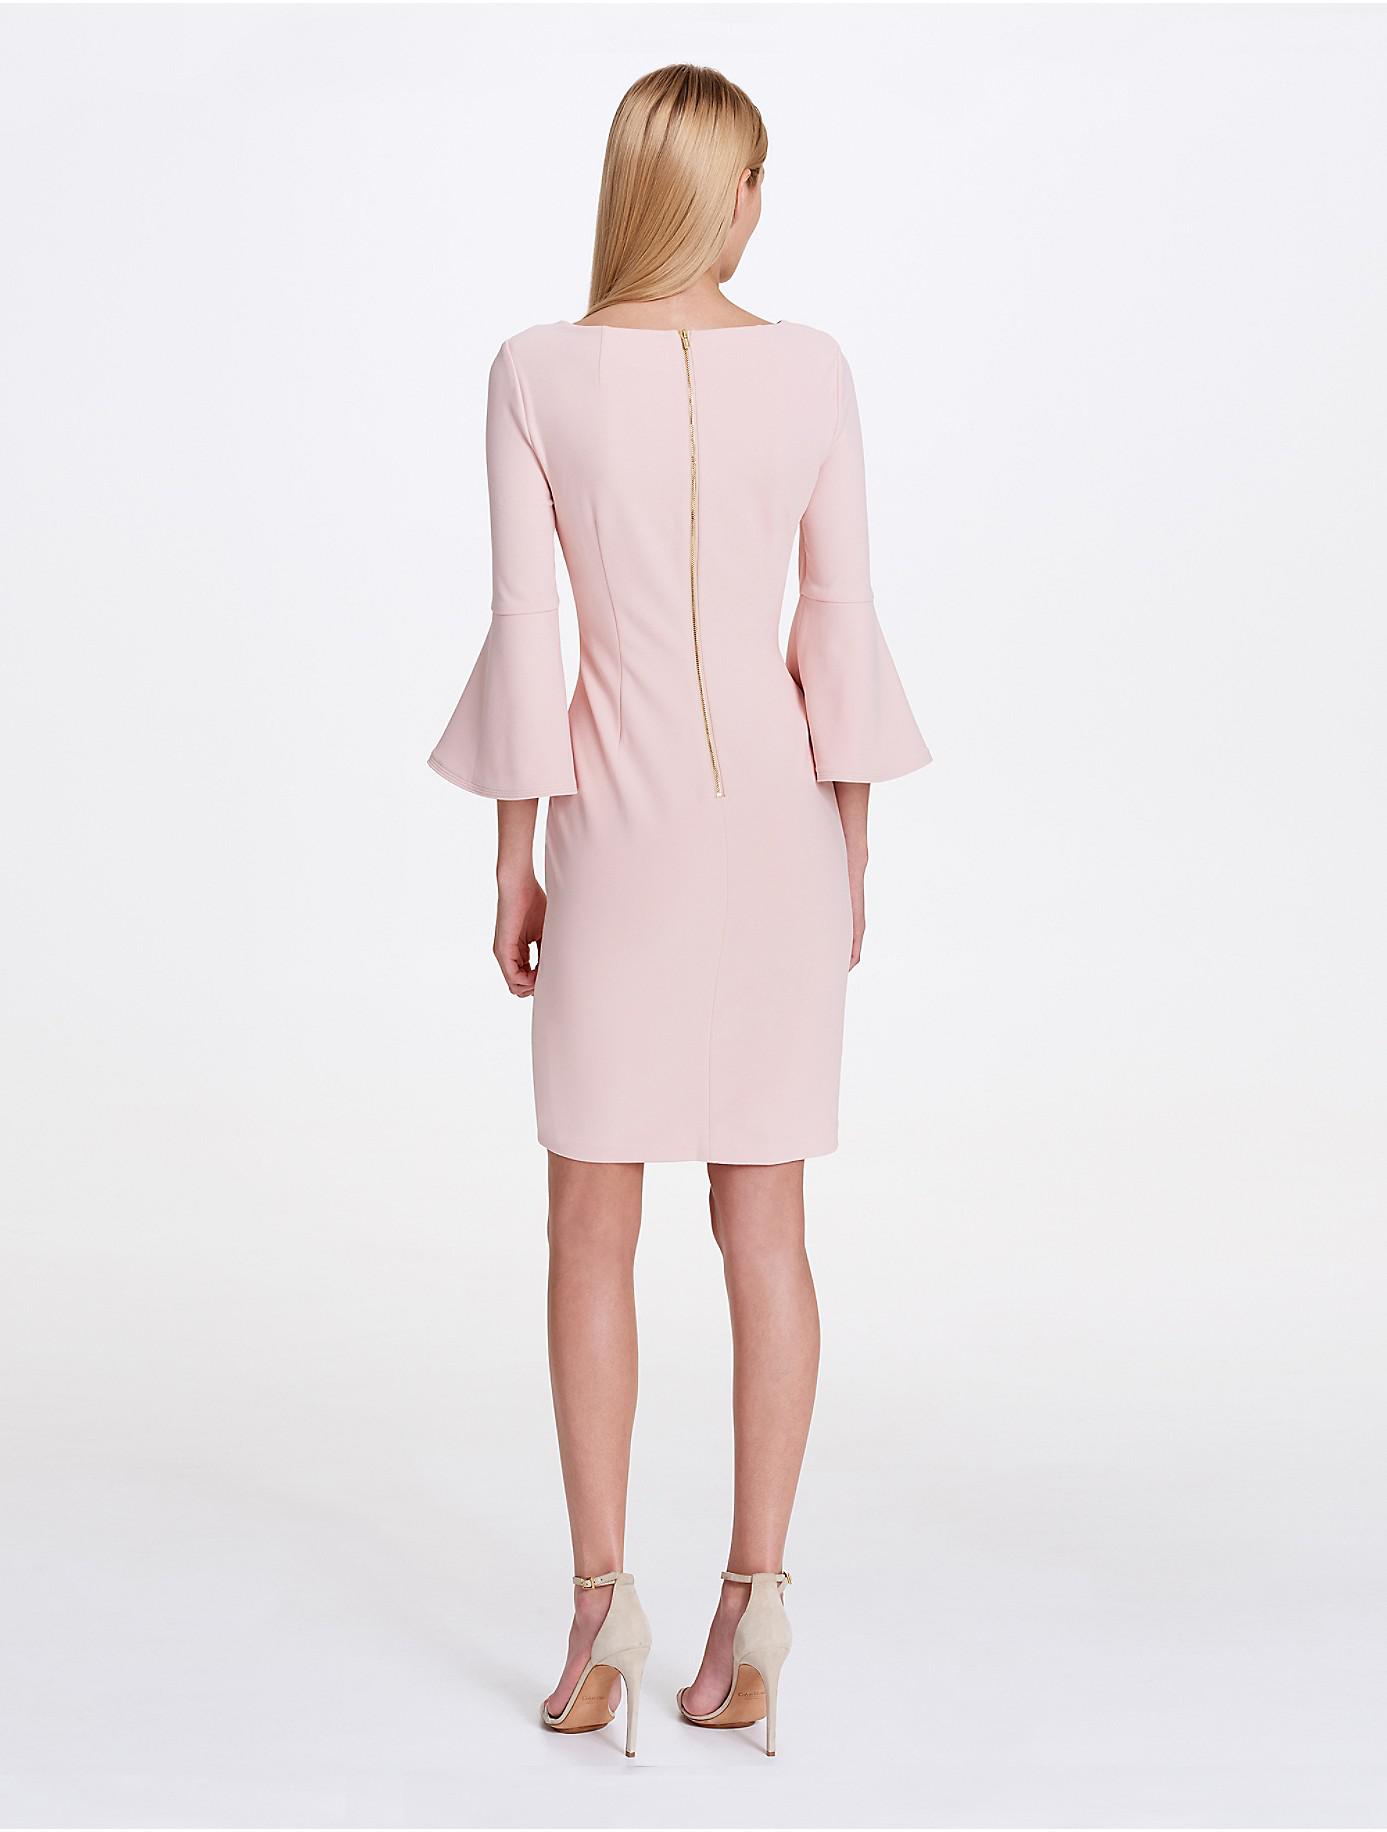 Blush Pink Bell Sleeve Dress Online ...